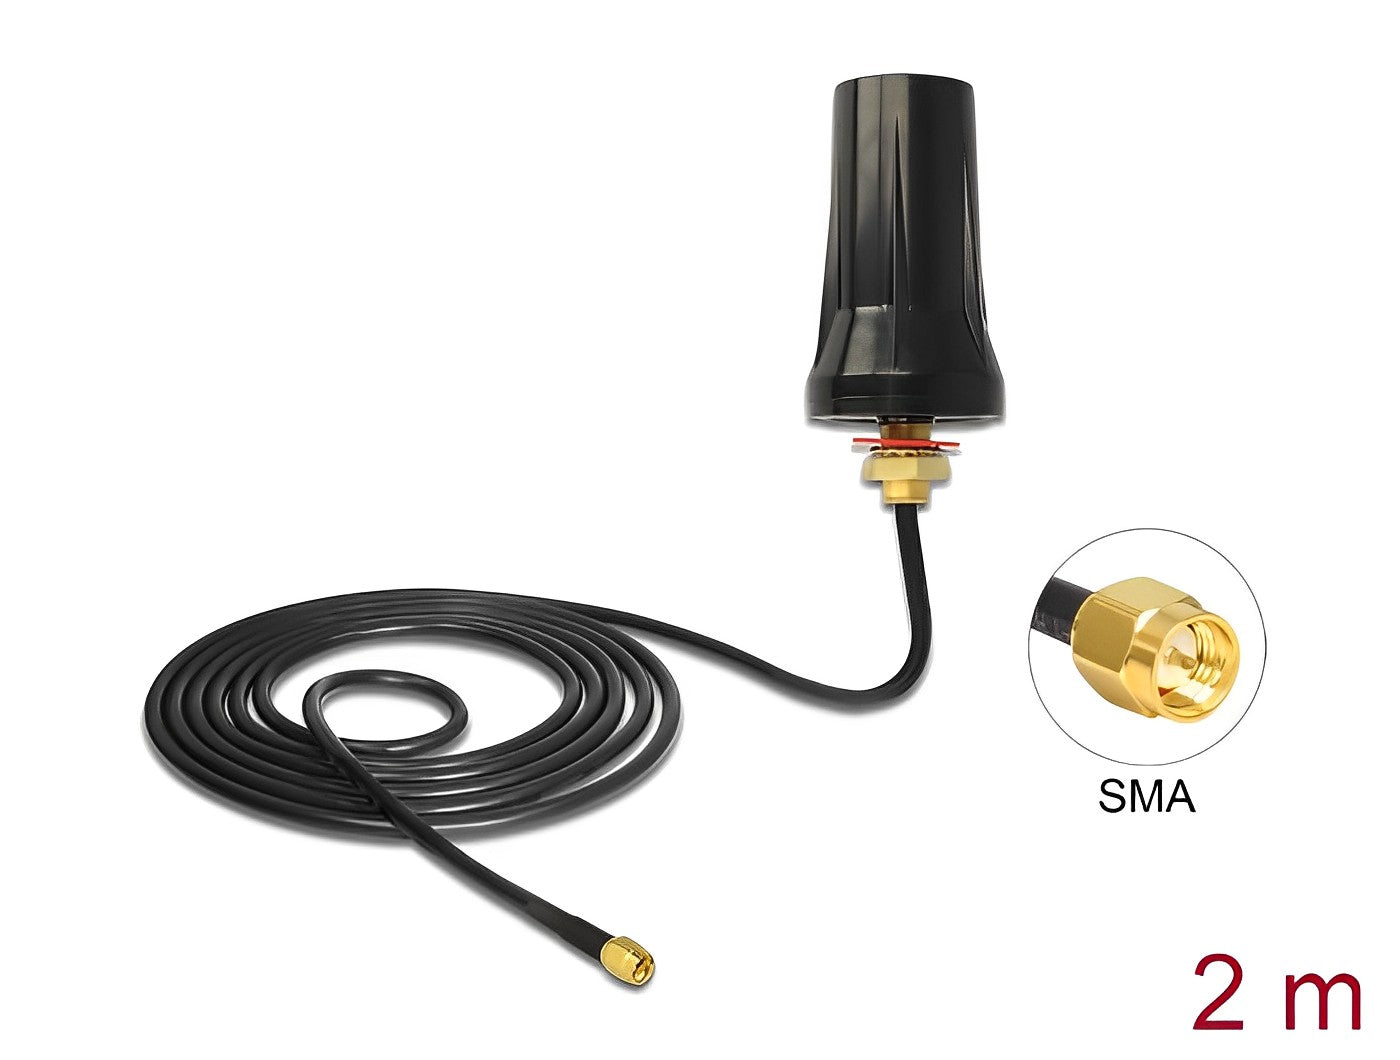 אנטנה כלל כיוונית ISM 433 MHz 2 dBi חיצונית IP67 עם כבל RG-58 U מחבר SMA plug - delock.israel